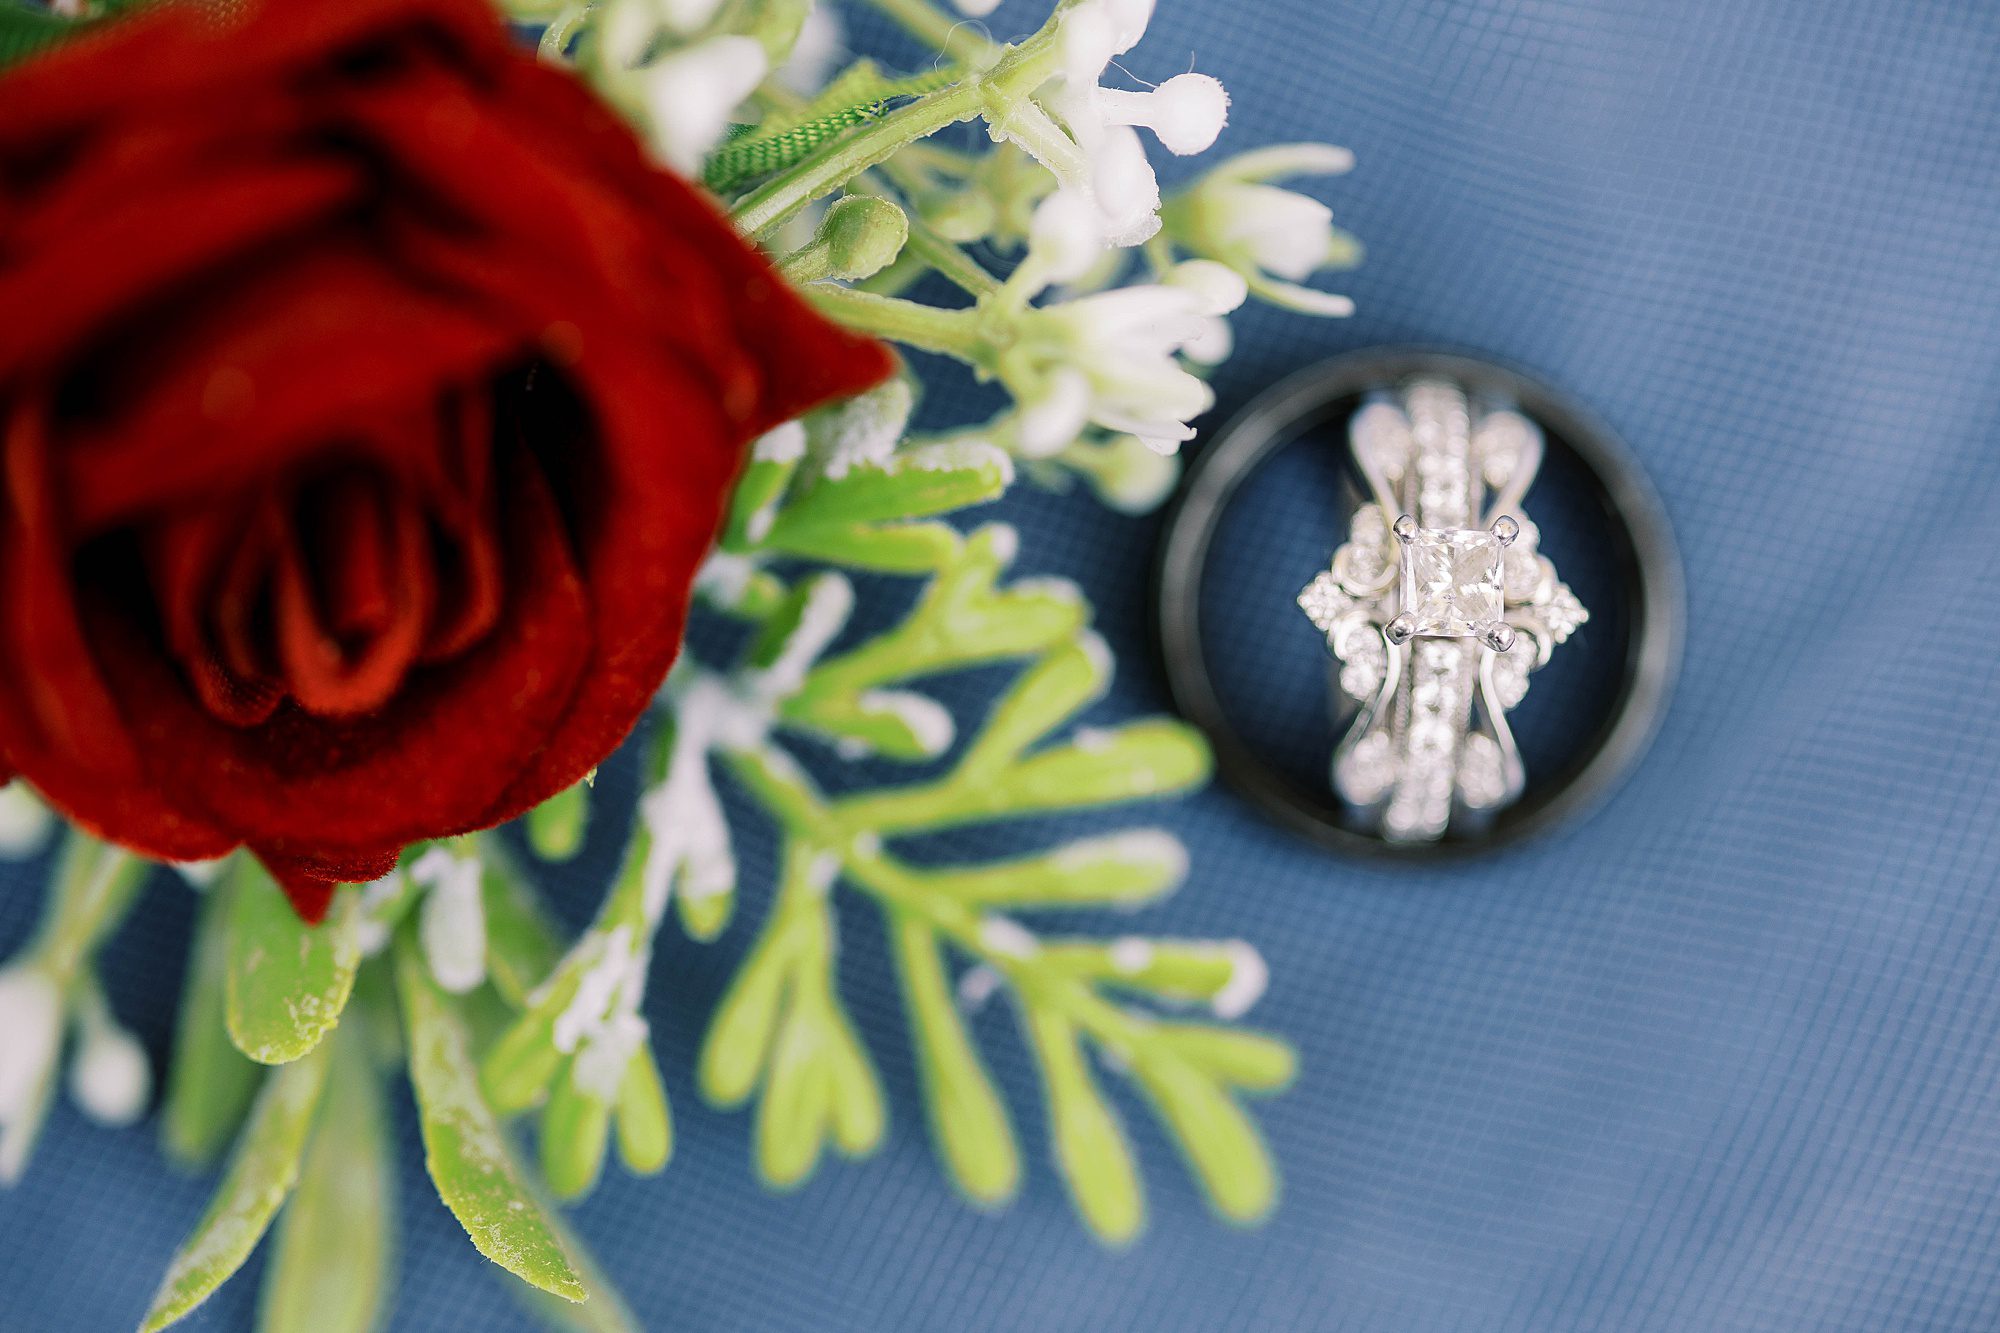 wedding rings rest on blue velvet by red rose